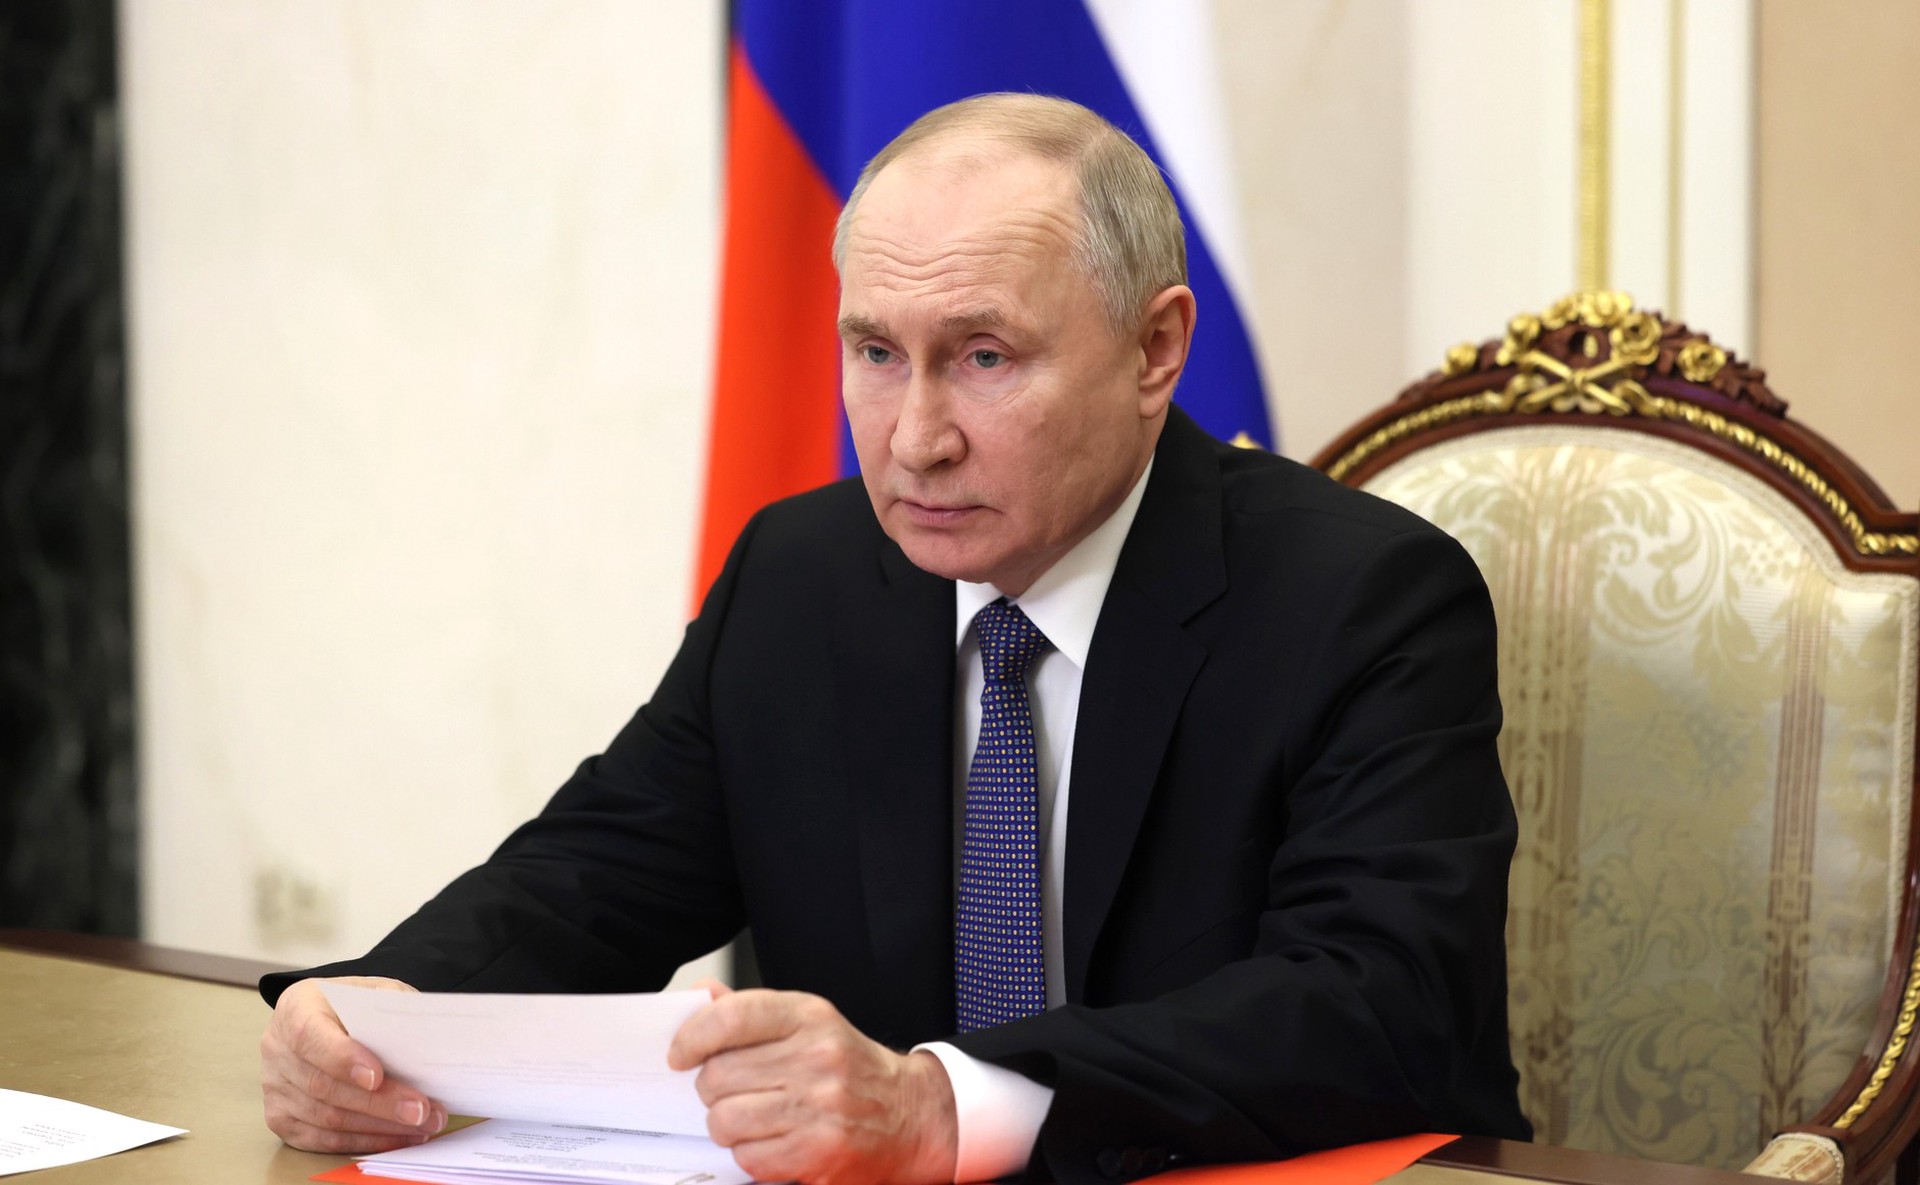 Путин: Рост ВВП России продолжает показывать хорошие темпы